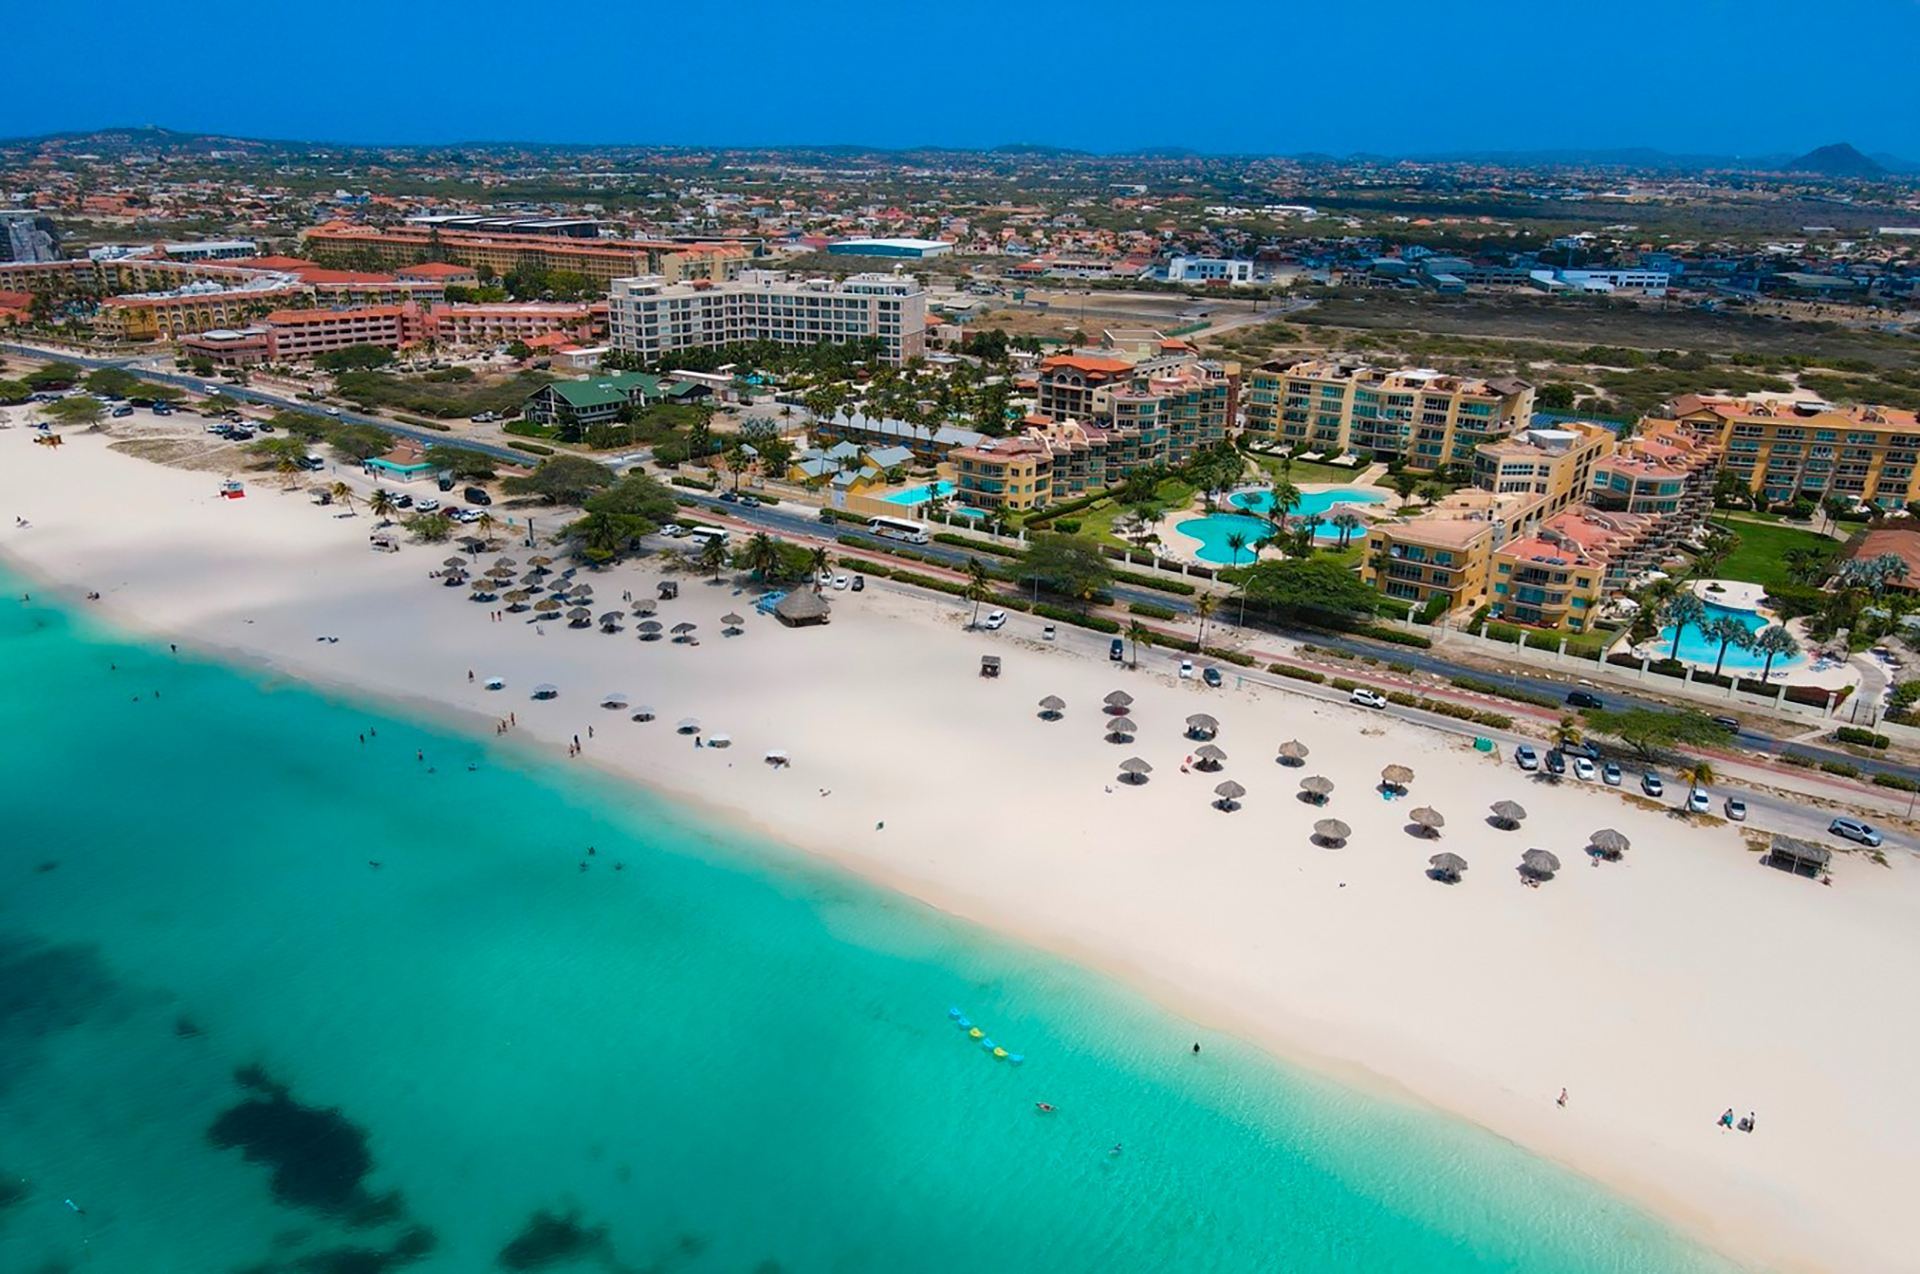 Eagle Beach, Aruba fue catalogada entre las 3 mejores playas del mundo, según Trip Advisor Traveler´s Choice Awards en 2019